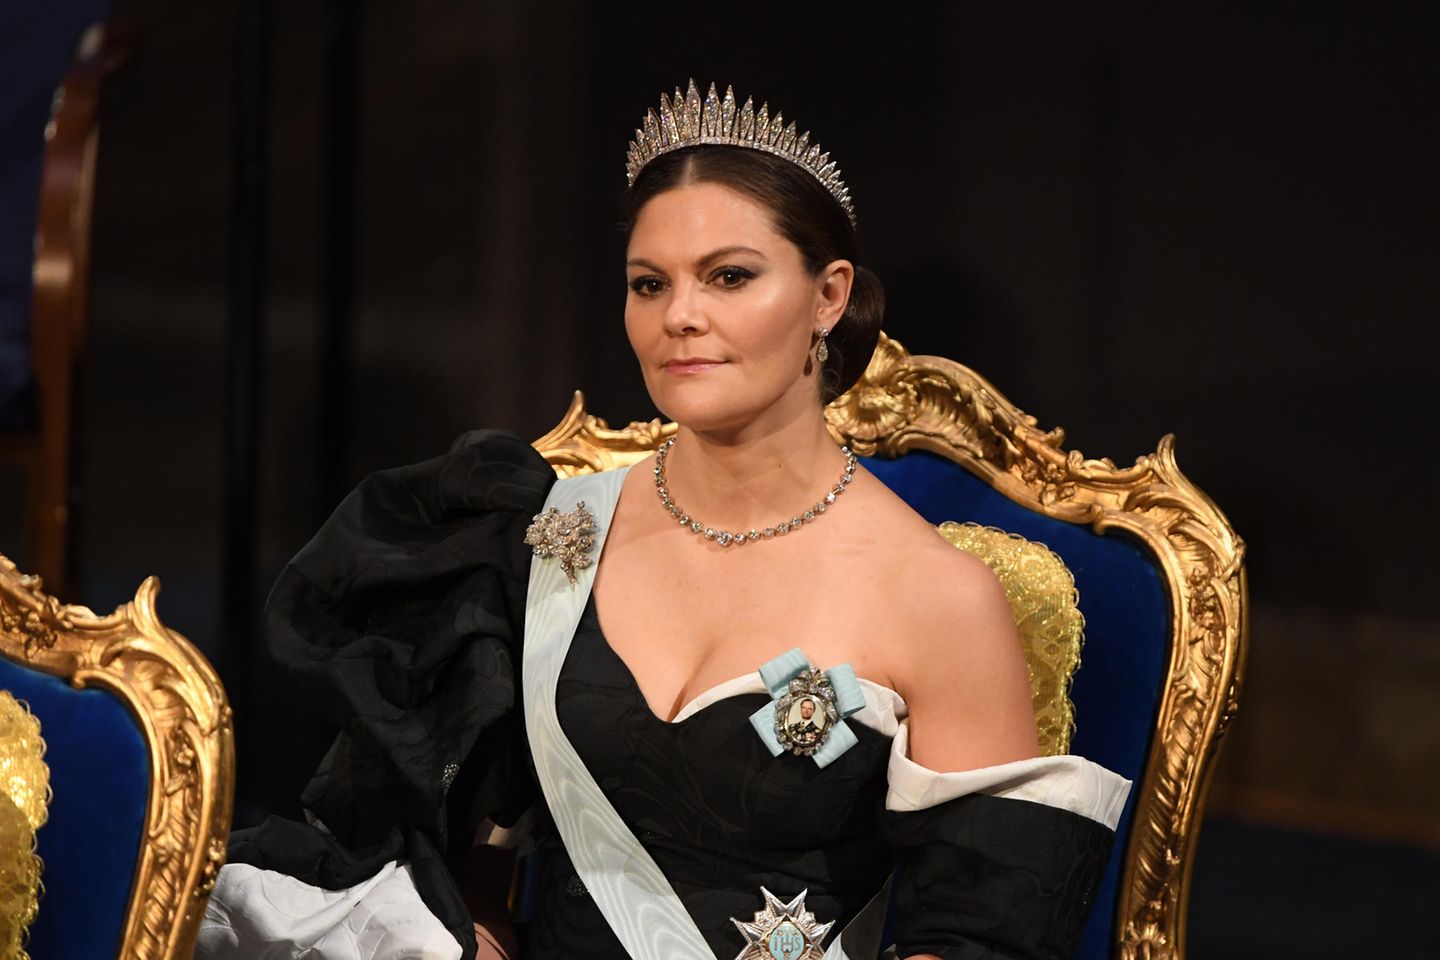 Royals: Prinzessin Victoria ist "sehr traurig", meldet der Hof